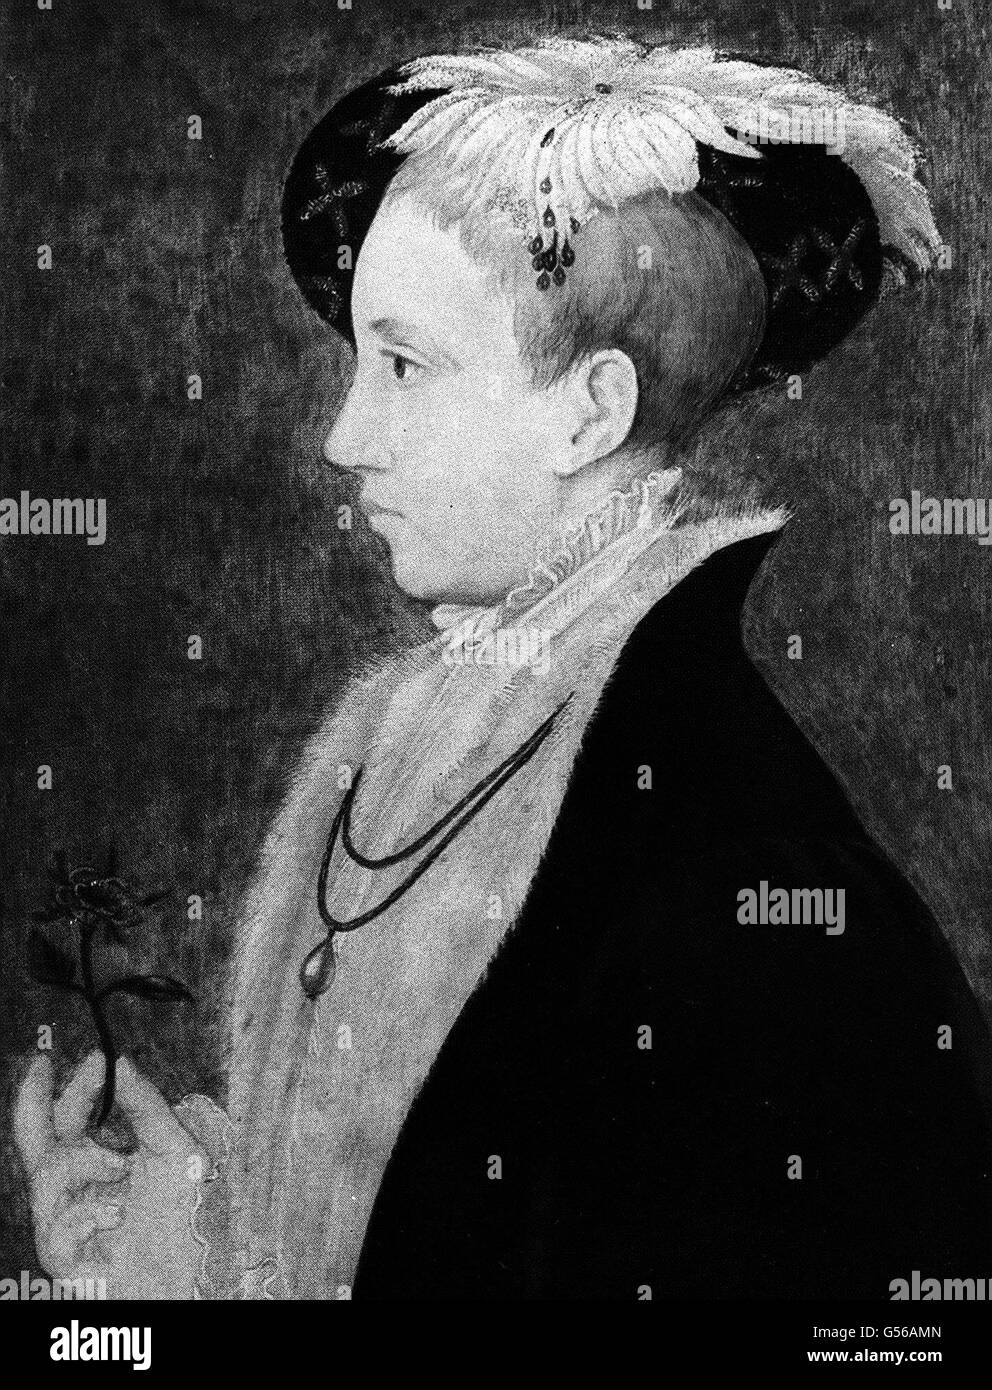 KÖNIG EDWARD VI. : EIN Porträt von Edward VI. (1537-1553), König von England 1547-1553. Edward war der Sohn von König Heinrich VIII und Jane Seymour. Sein Onkel, der Herzog von Somerset, war Regent bis 1552, als er hingerichtet wurde. Edward Than kam unter die Kontrolle von Dudley, Herzog von Northumberland. Seine Herrschaft war bemerkenswert für die vandalistischen Exzesse der Reformation. Stockfoto